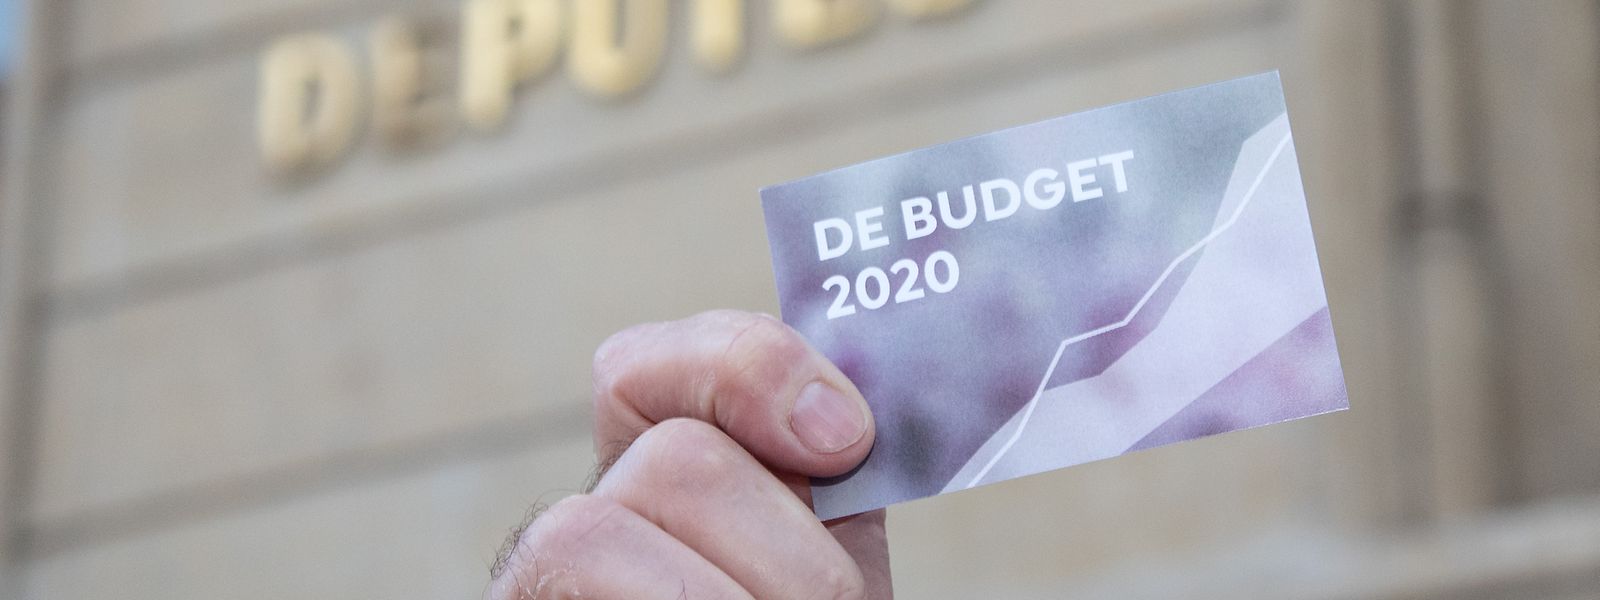 Pour la Chambre des métiers, le budget 2020 du gouvernement soulève plus de questions qu'il n'apporte de réponses.